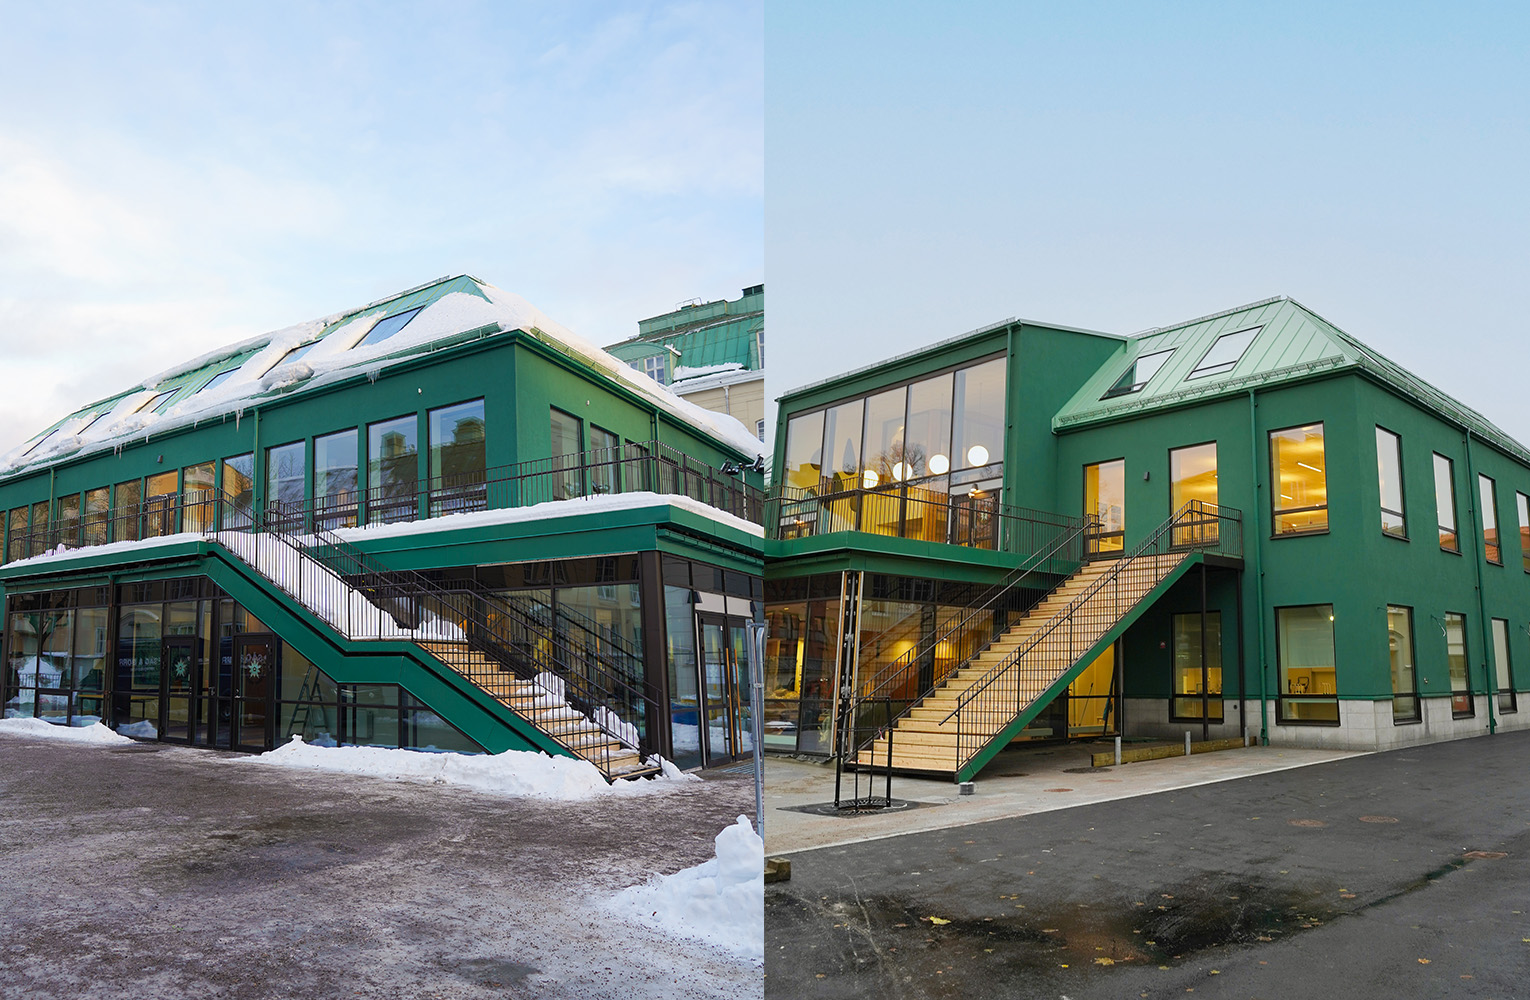 Två olika bilder bredvid varandra, båda på moderna hus med raka linjer i mörkare grön färg med grönt tak. Skolrestaurang och naturvetarhus.